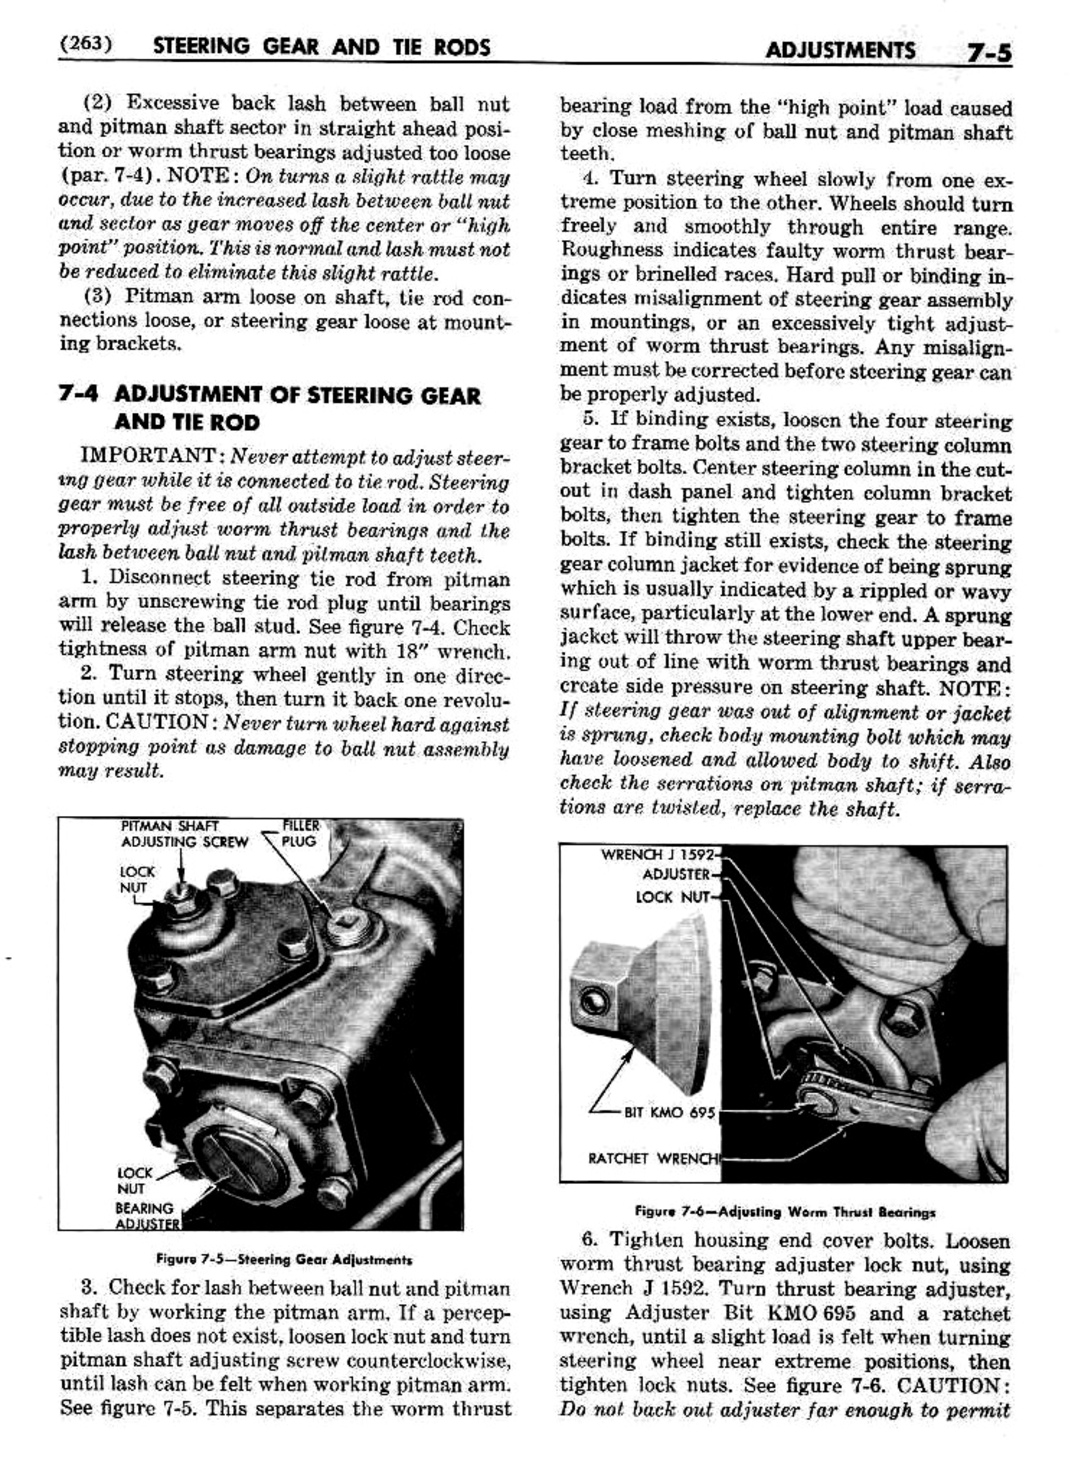 n_08 1951 Buick Shop Manual - Steering-005-005.jpg